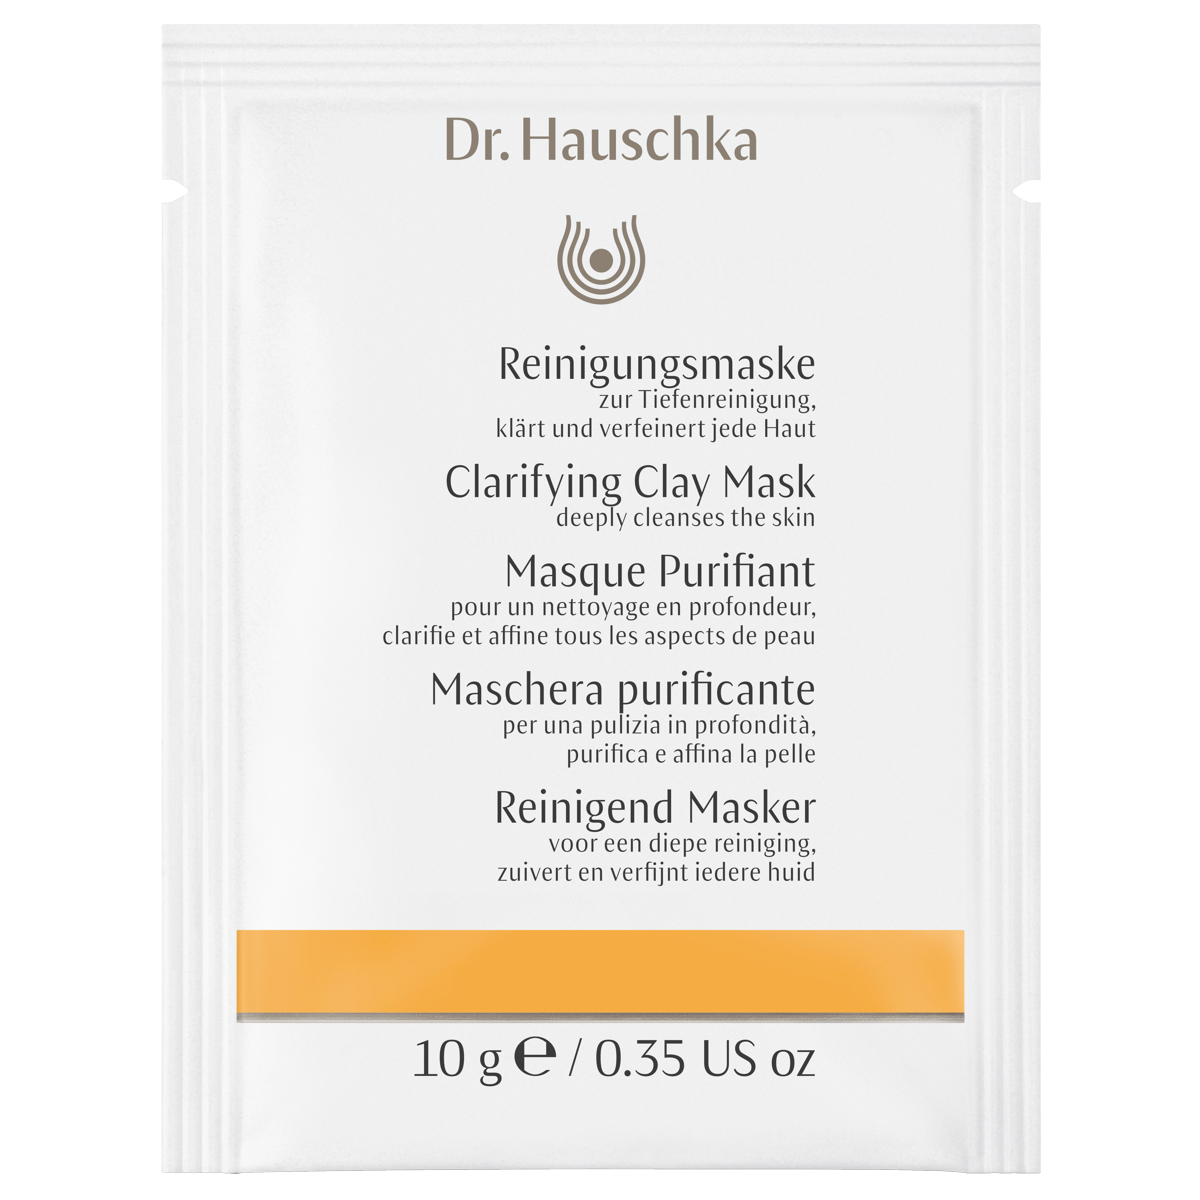 Dr_Hauschka_Reinigungs_Maske_Box_online_kaufen